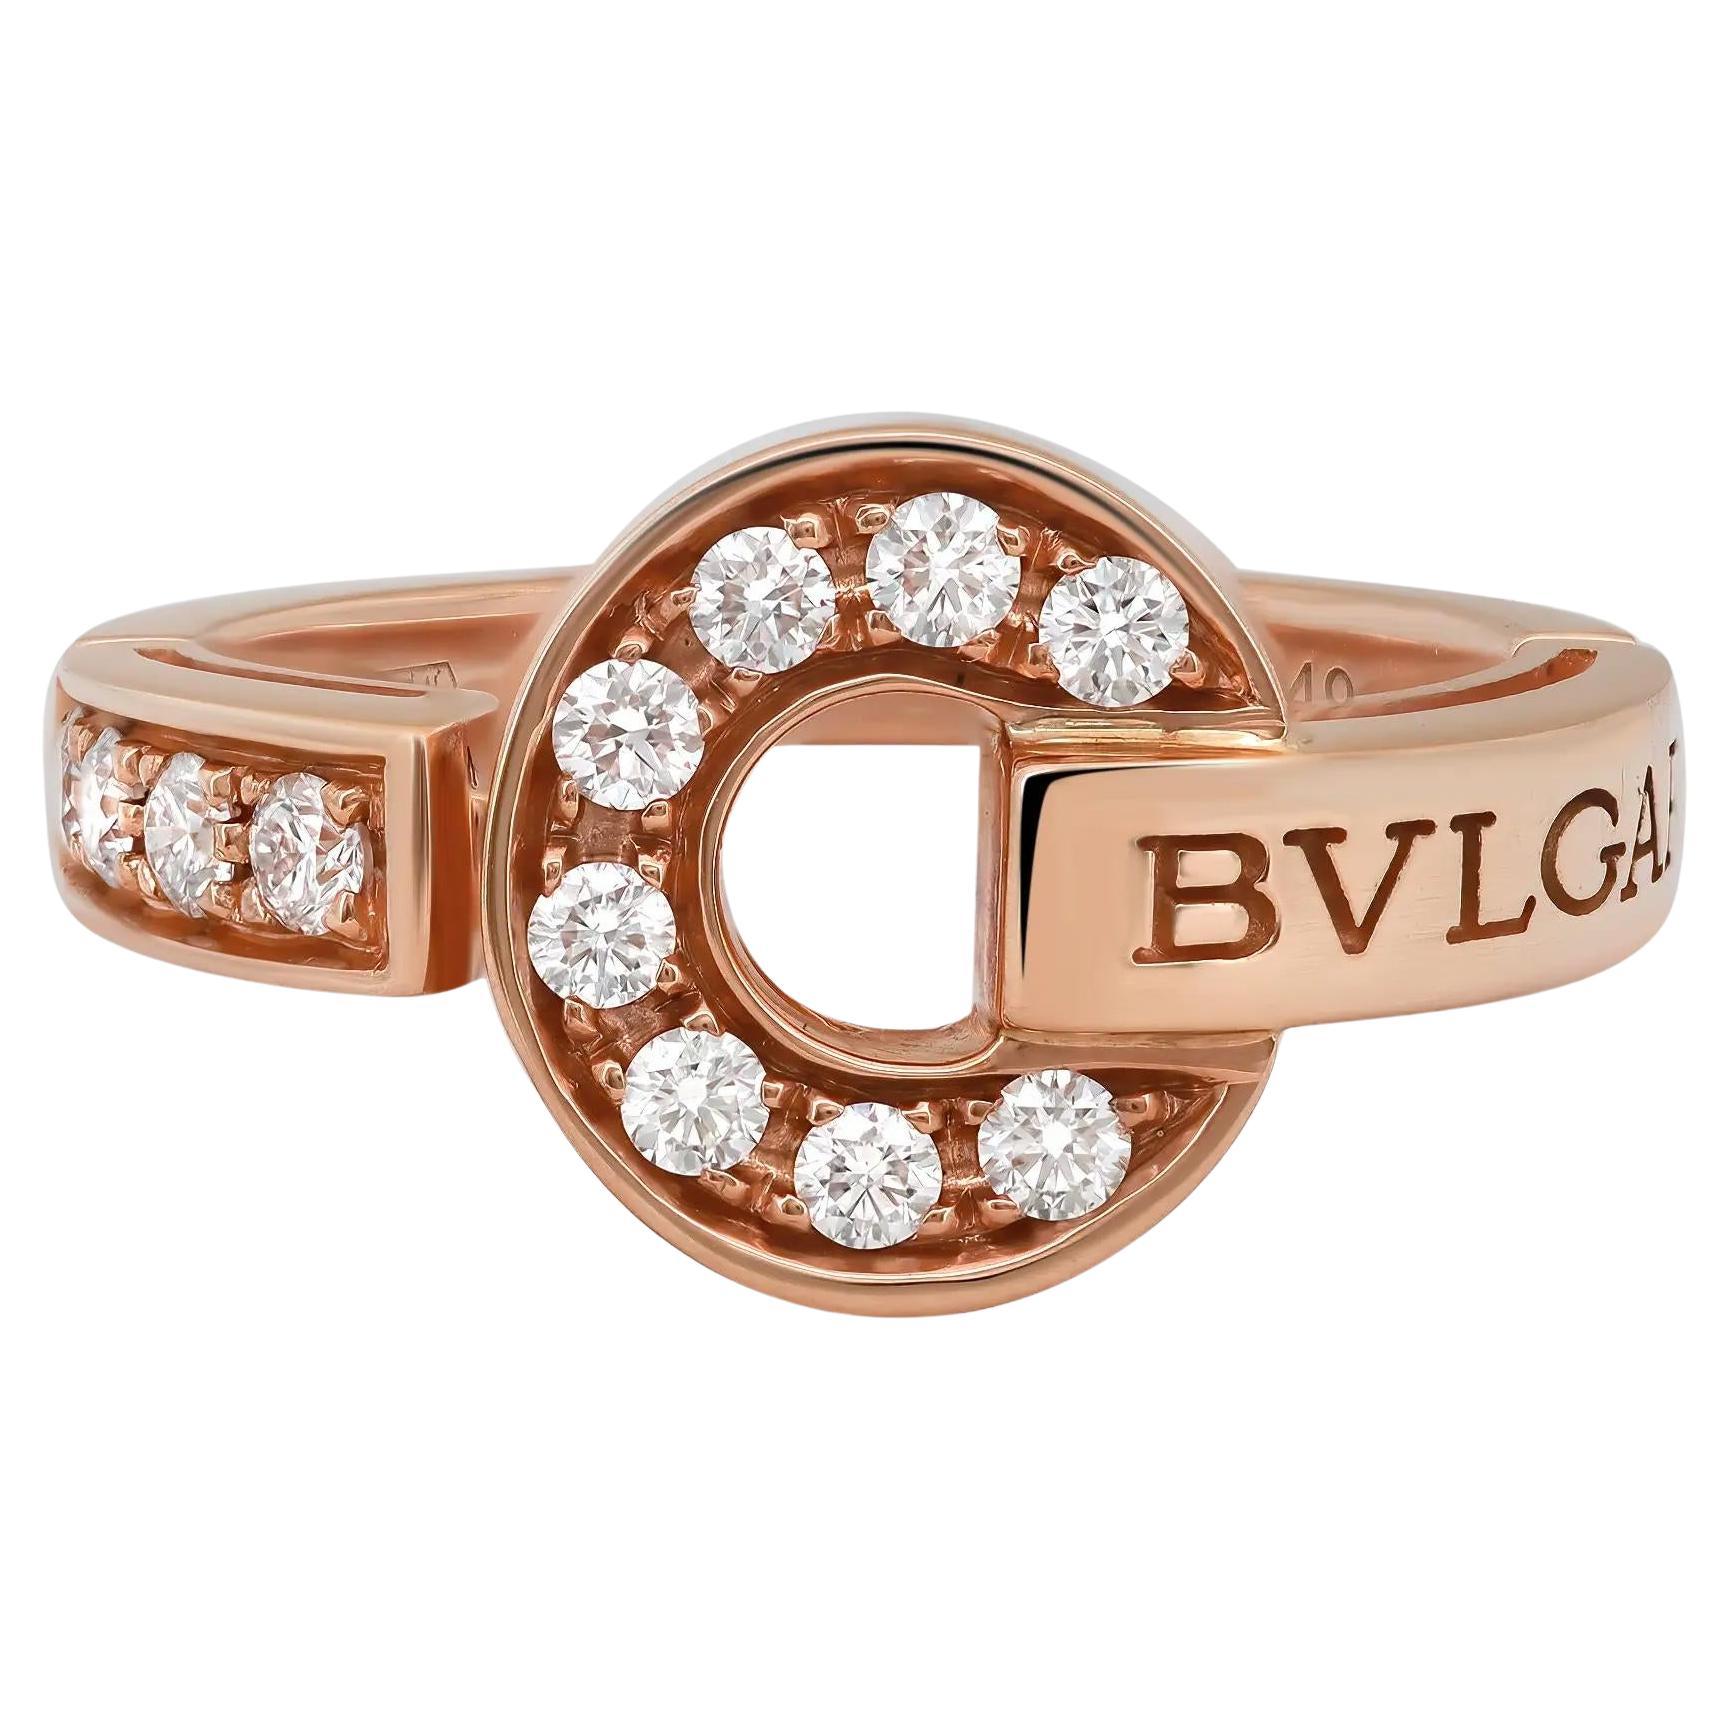 Bvlgari Bvlgari Diamond Ring 18K Rose Gold Size 49 US 5